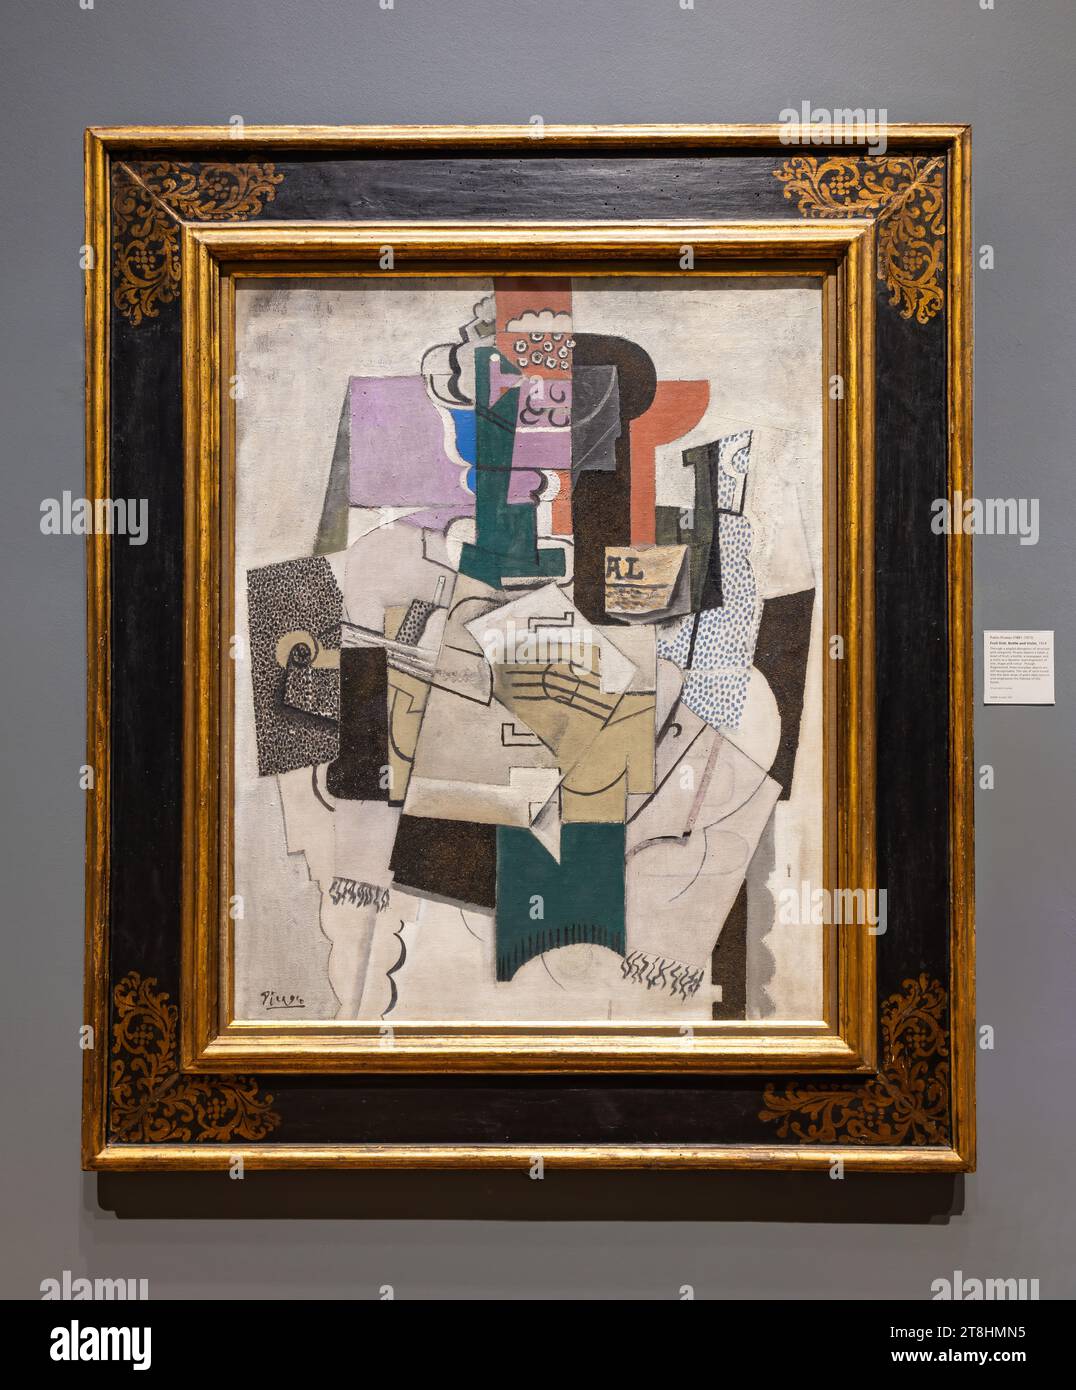 Londres, Royaume-Uni - Mai 2023 : plat de fruits, bouteille et peinture au violon de Pablo Picasso, un exemple du cubisme, le mouvement artistique initiat du début du XXe siècle Banque D'Images